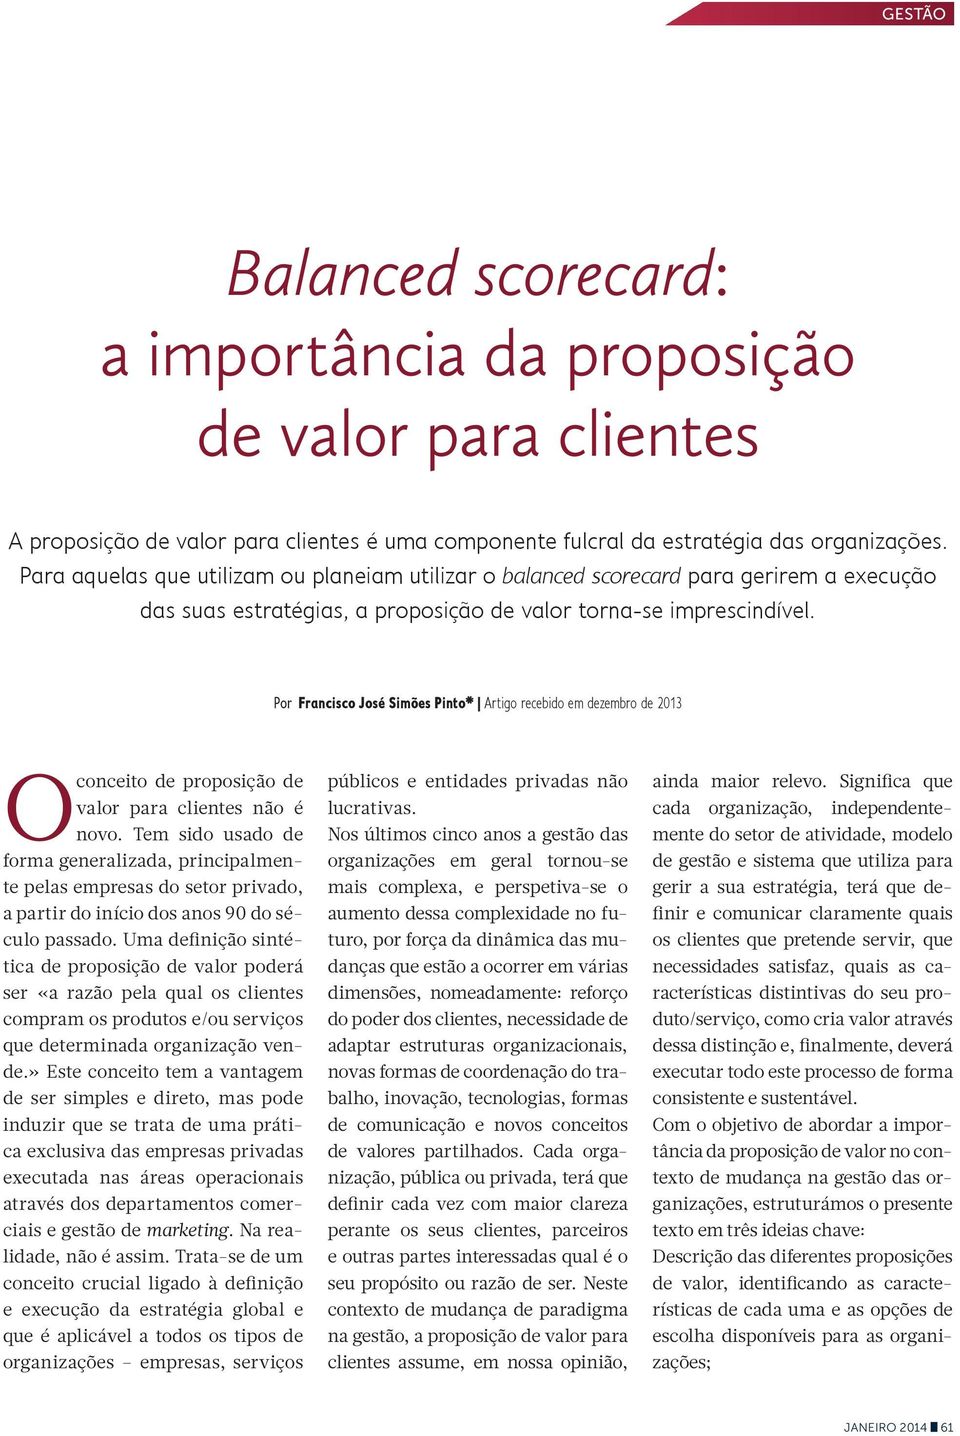 Por Francisco José Simões Pinto* Artigo recebido em dezembro de 2013 O conceito de proposição de valor para clientes não é novo.